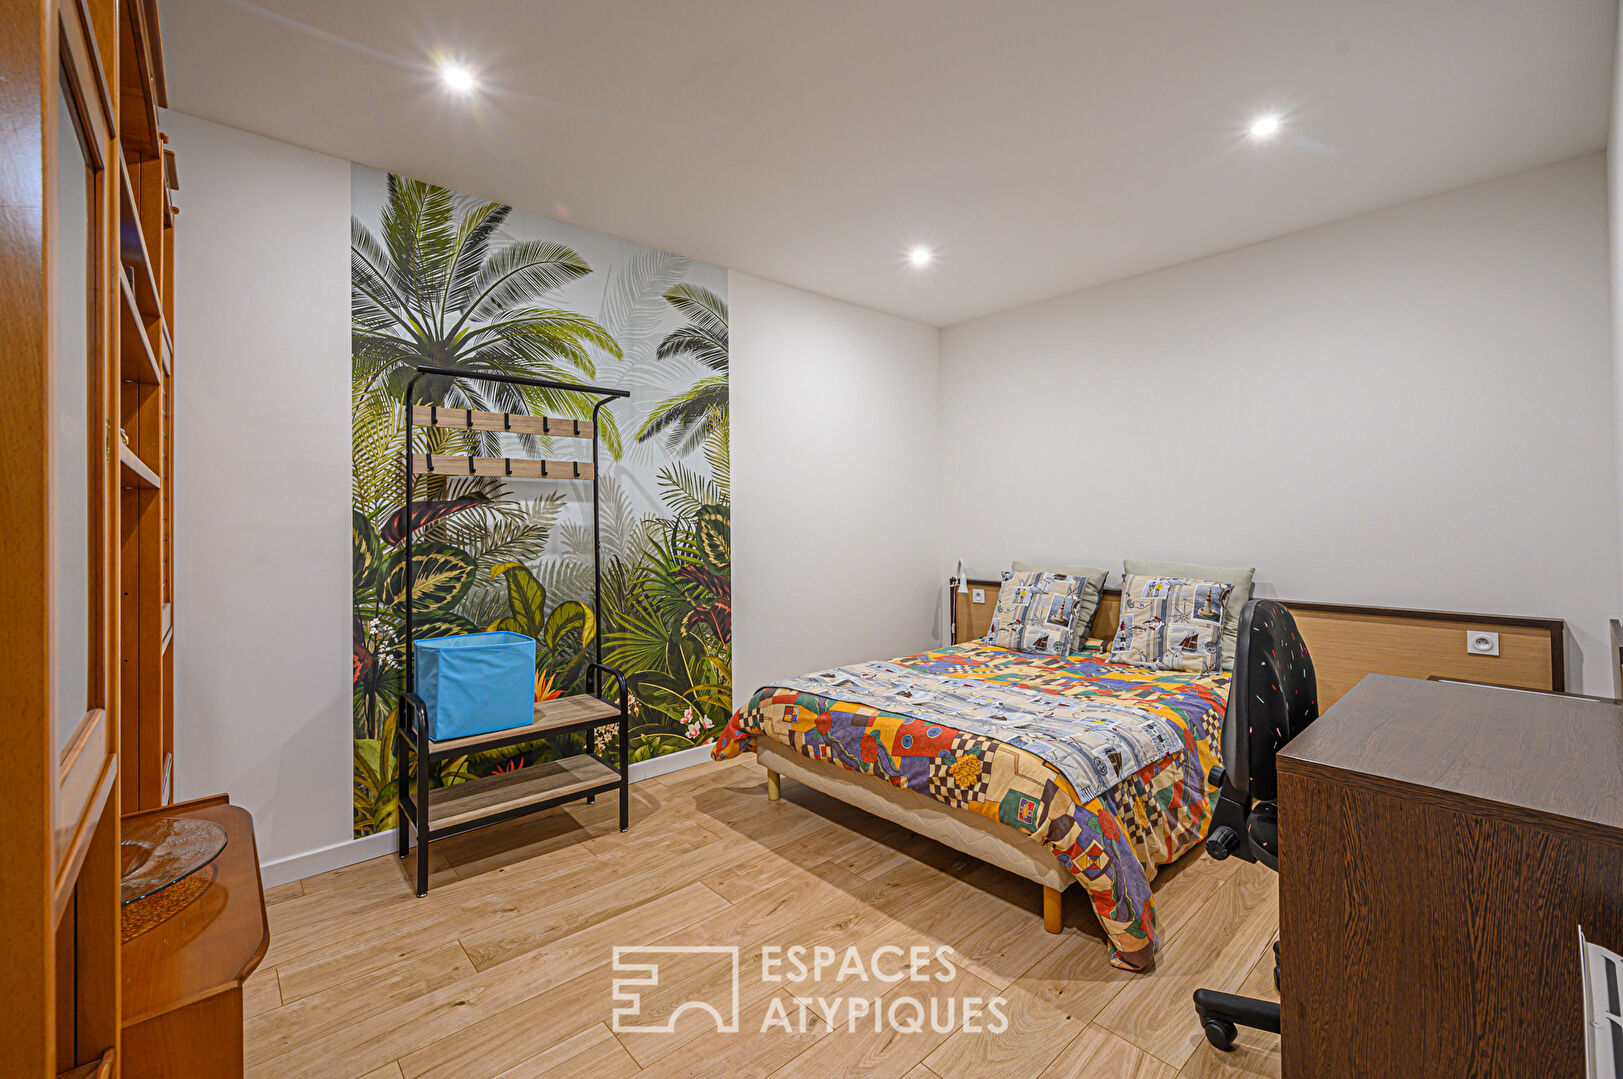 Appartement atypique rénové en bord de mer à Quiberon